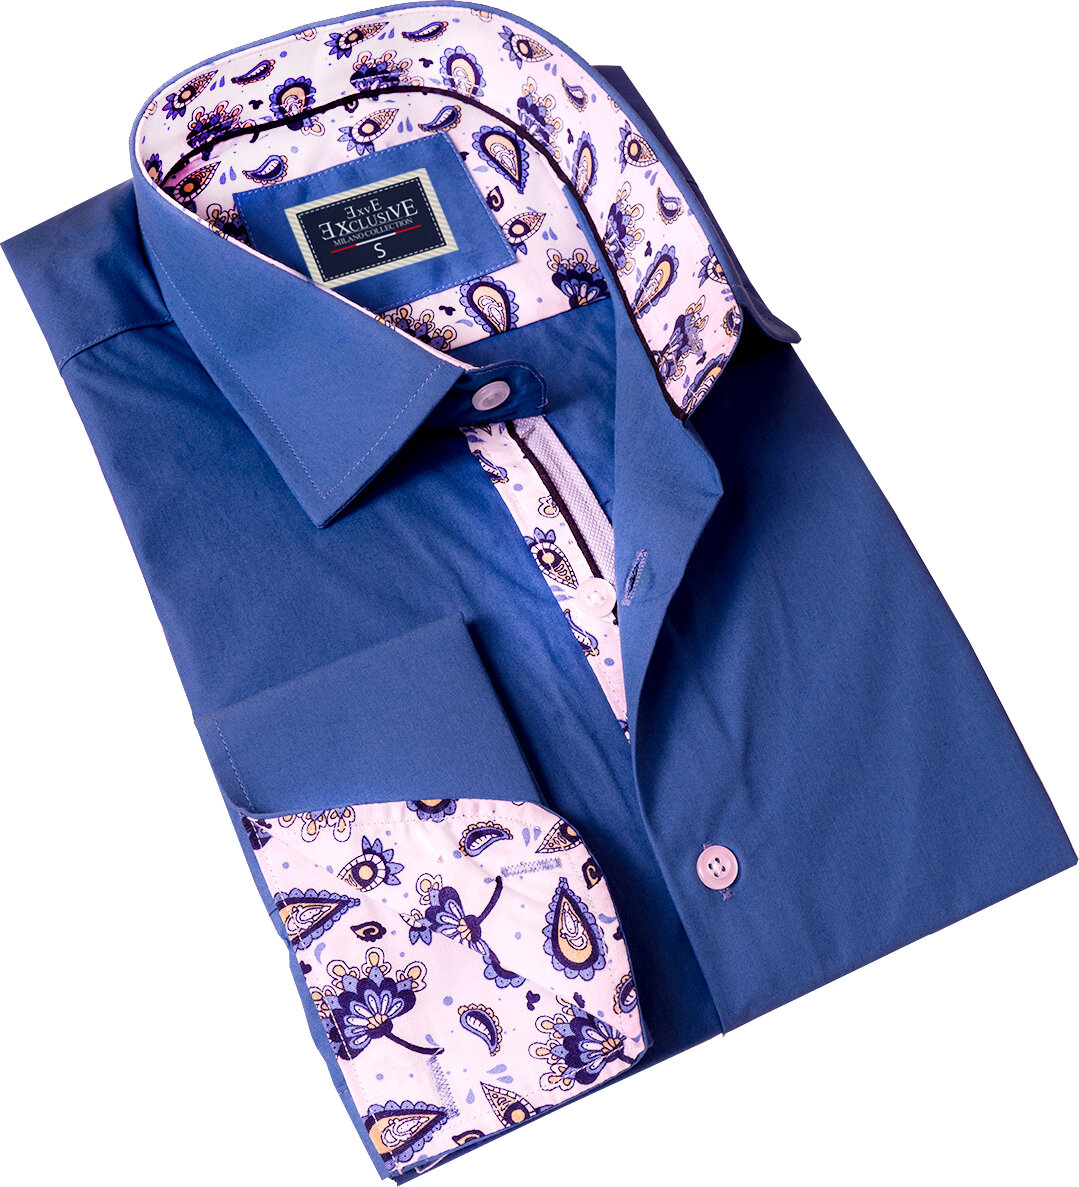 Эксклюзивная рубашка Exve с деталями в виде воротника и французскими манжетами в темно-синем цвете с манжетными пуговицами в подарочной картонной коробке.